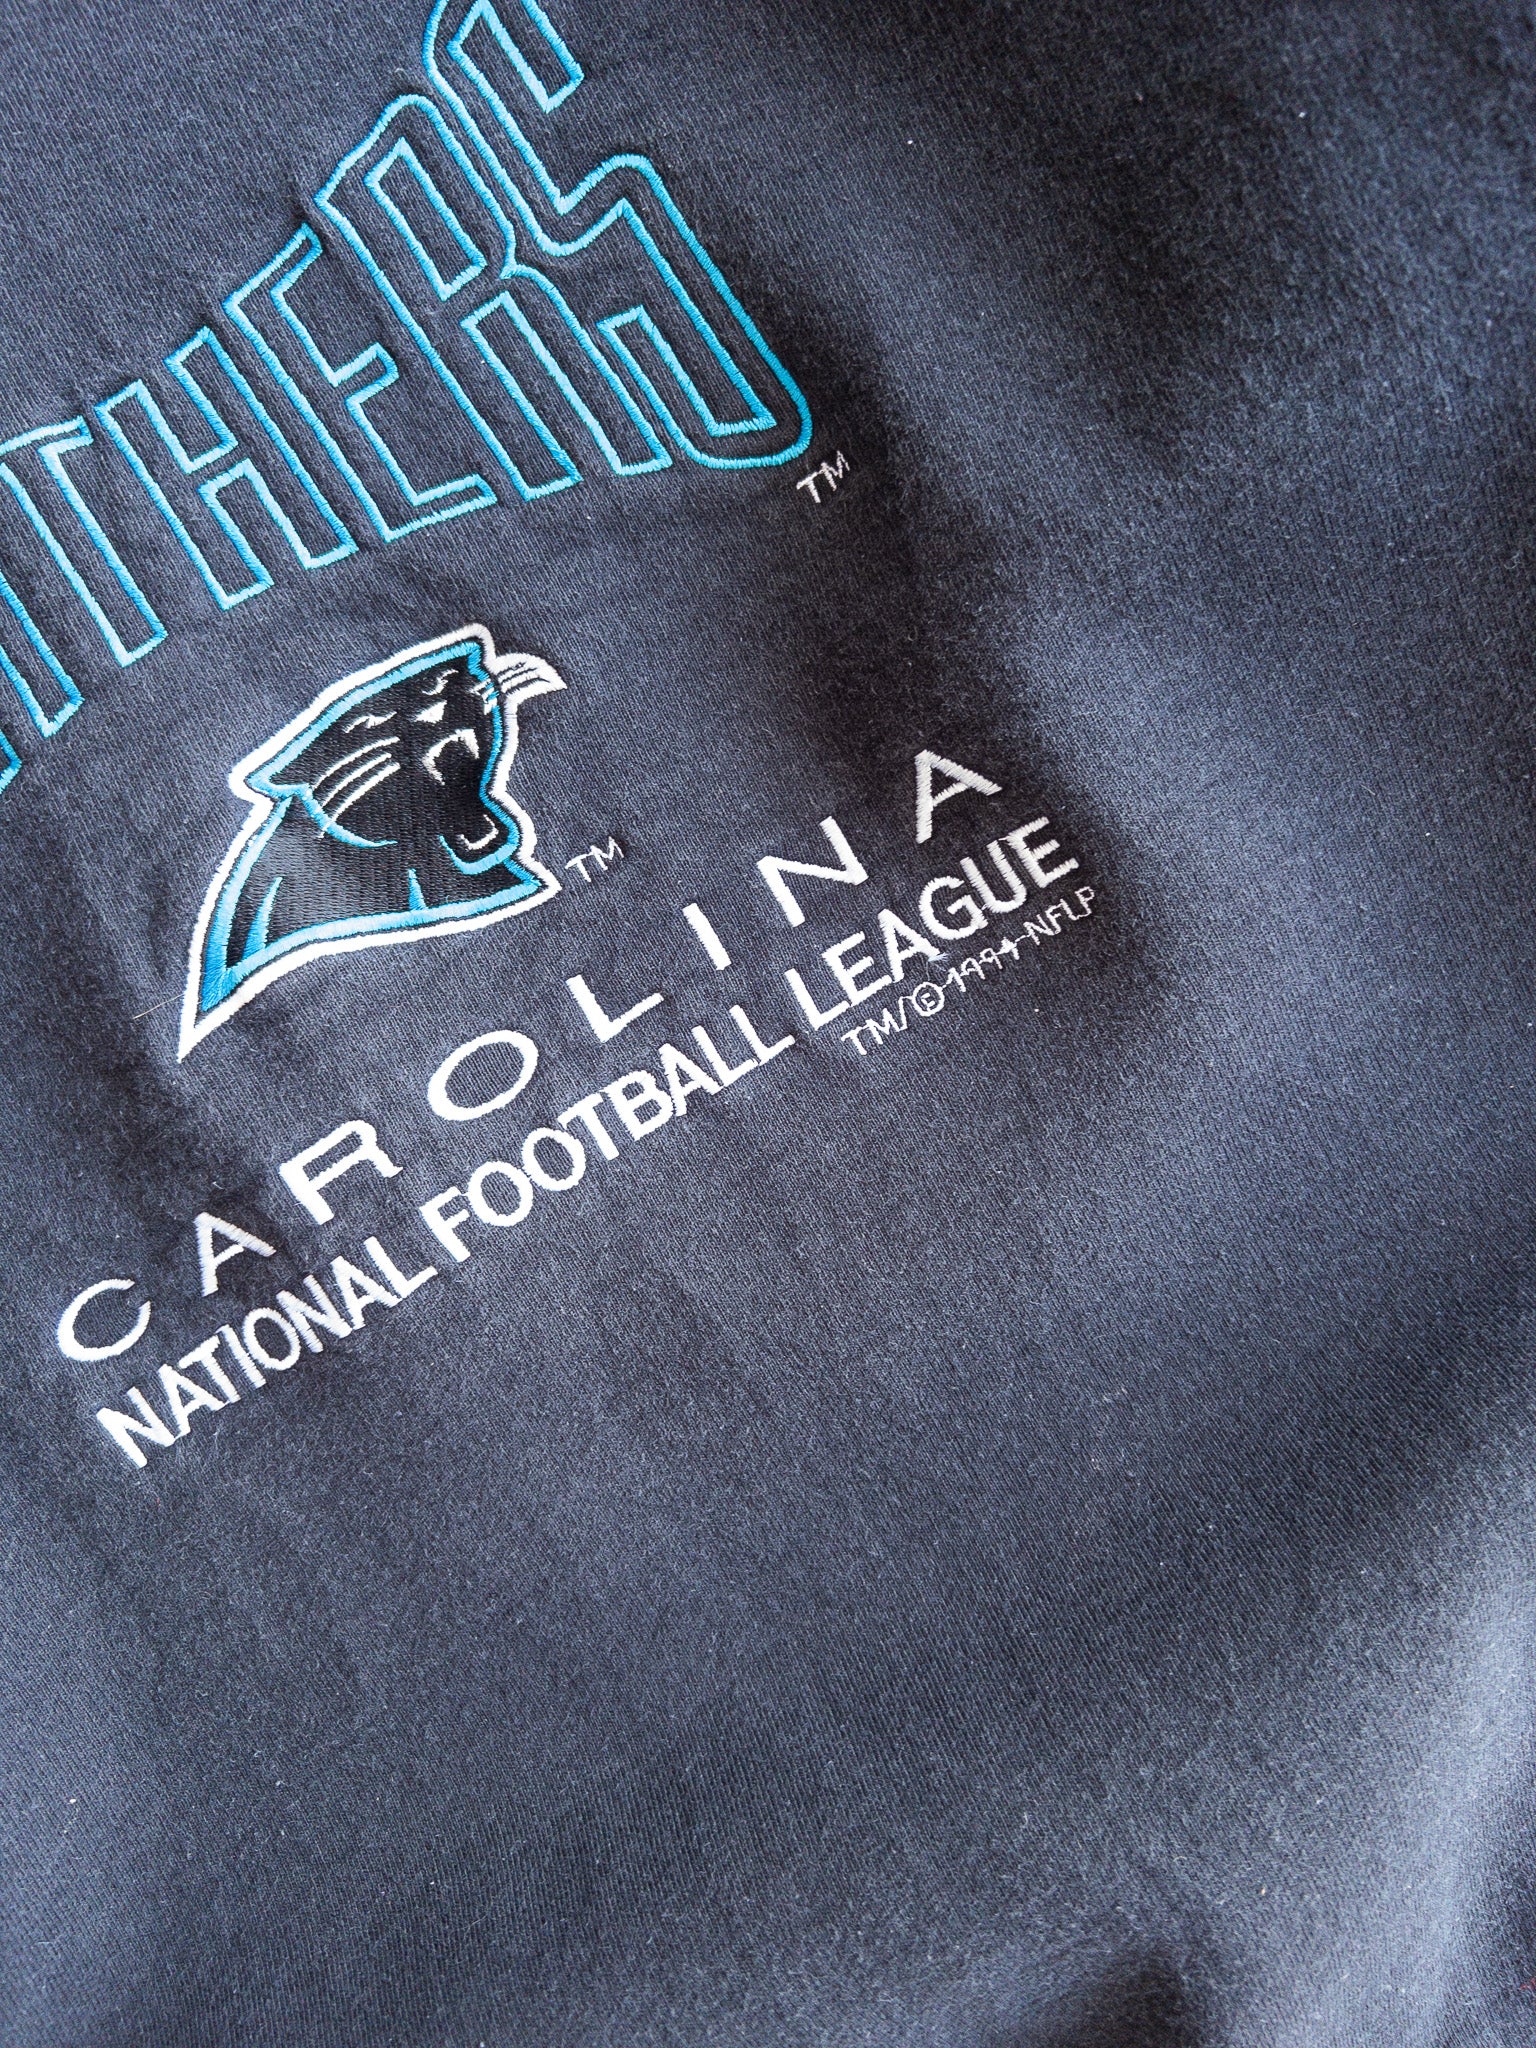 Vintage Carolina Panthers 1994 Sweatshirt (L)